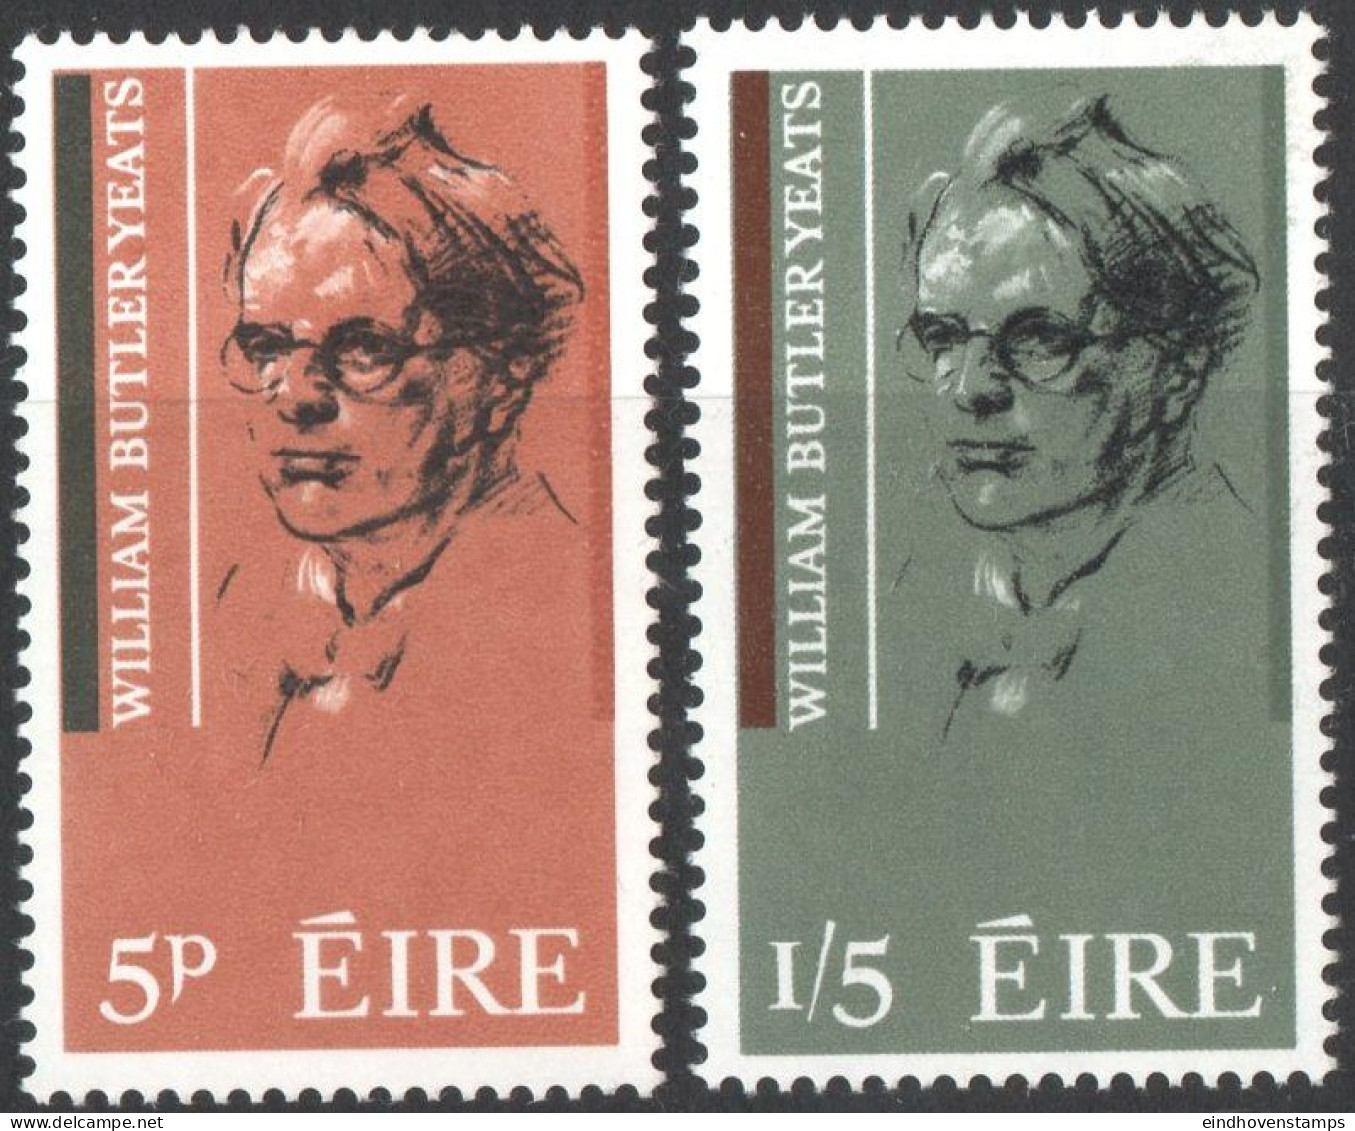 Eire 1965 William Butler Yeats, Writer, 2 Values MNH Ireland Portrait By Sean O'Sullivan - Scrittori